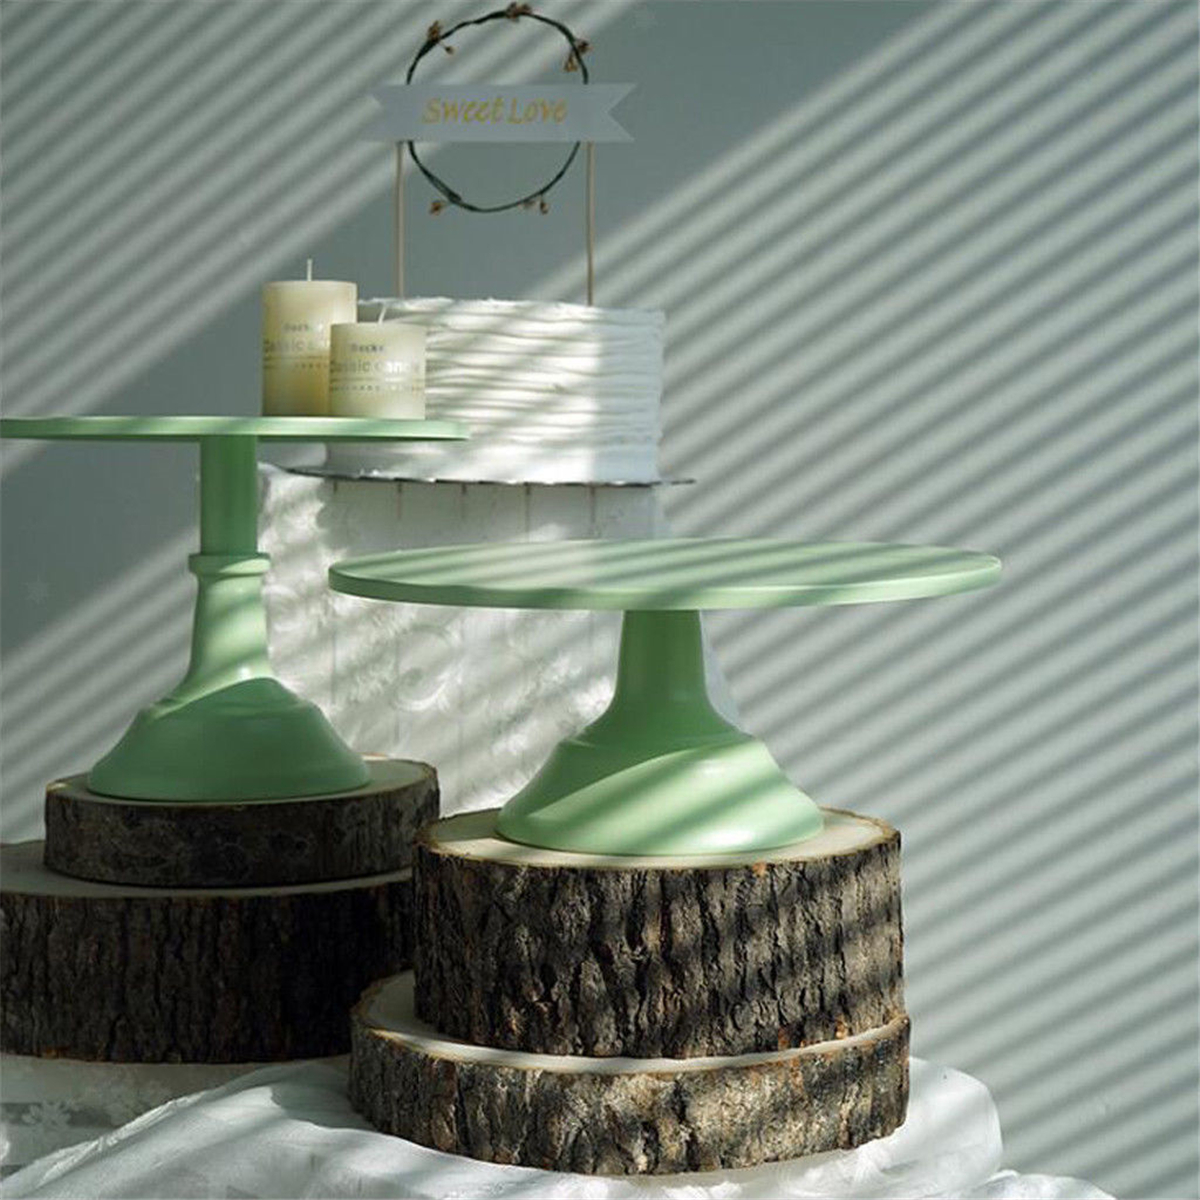 1012-Inch-Iron-Green-Round-Cake-Stand-Pedestal-Dessert-Holder-Wedding-Party-Decorations-1476996-4